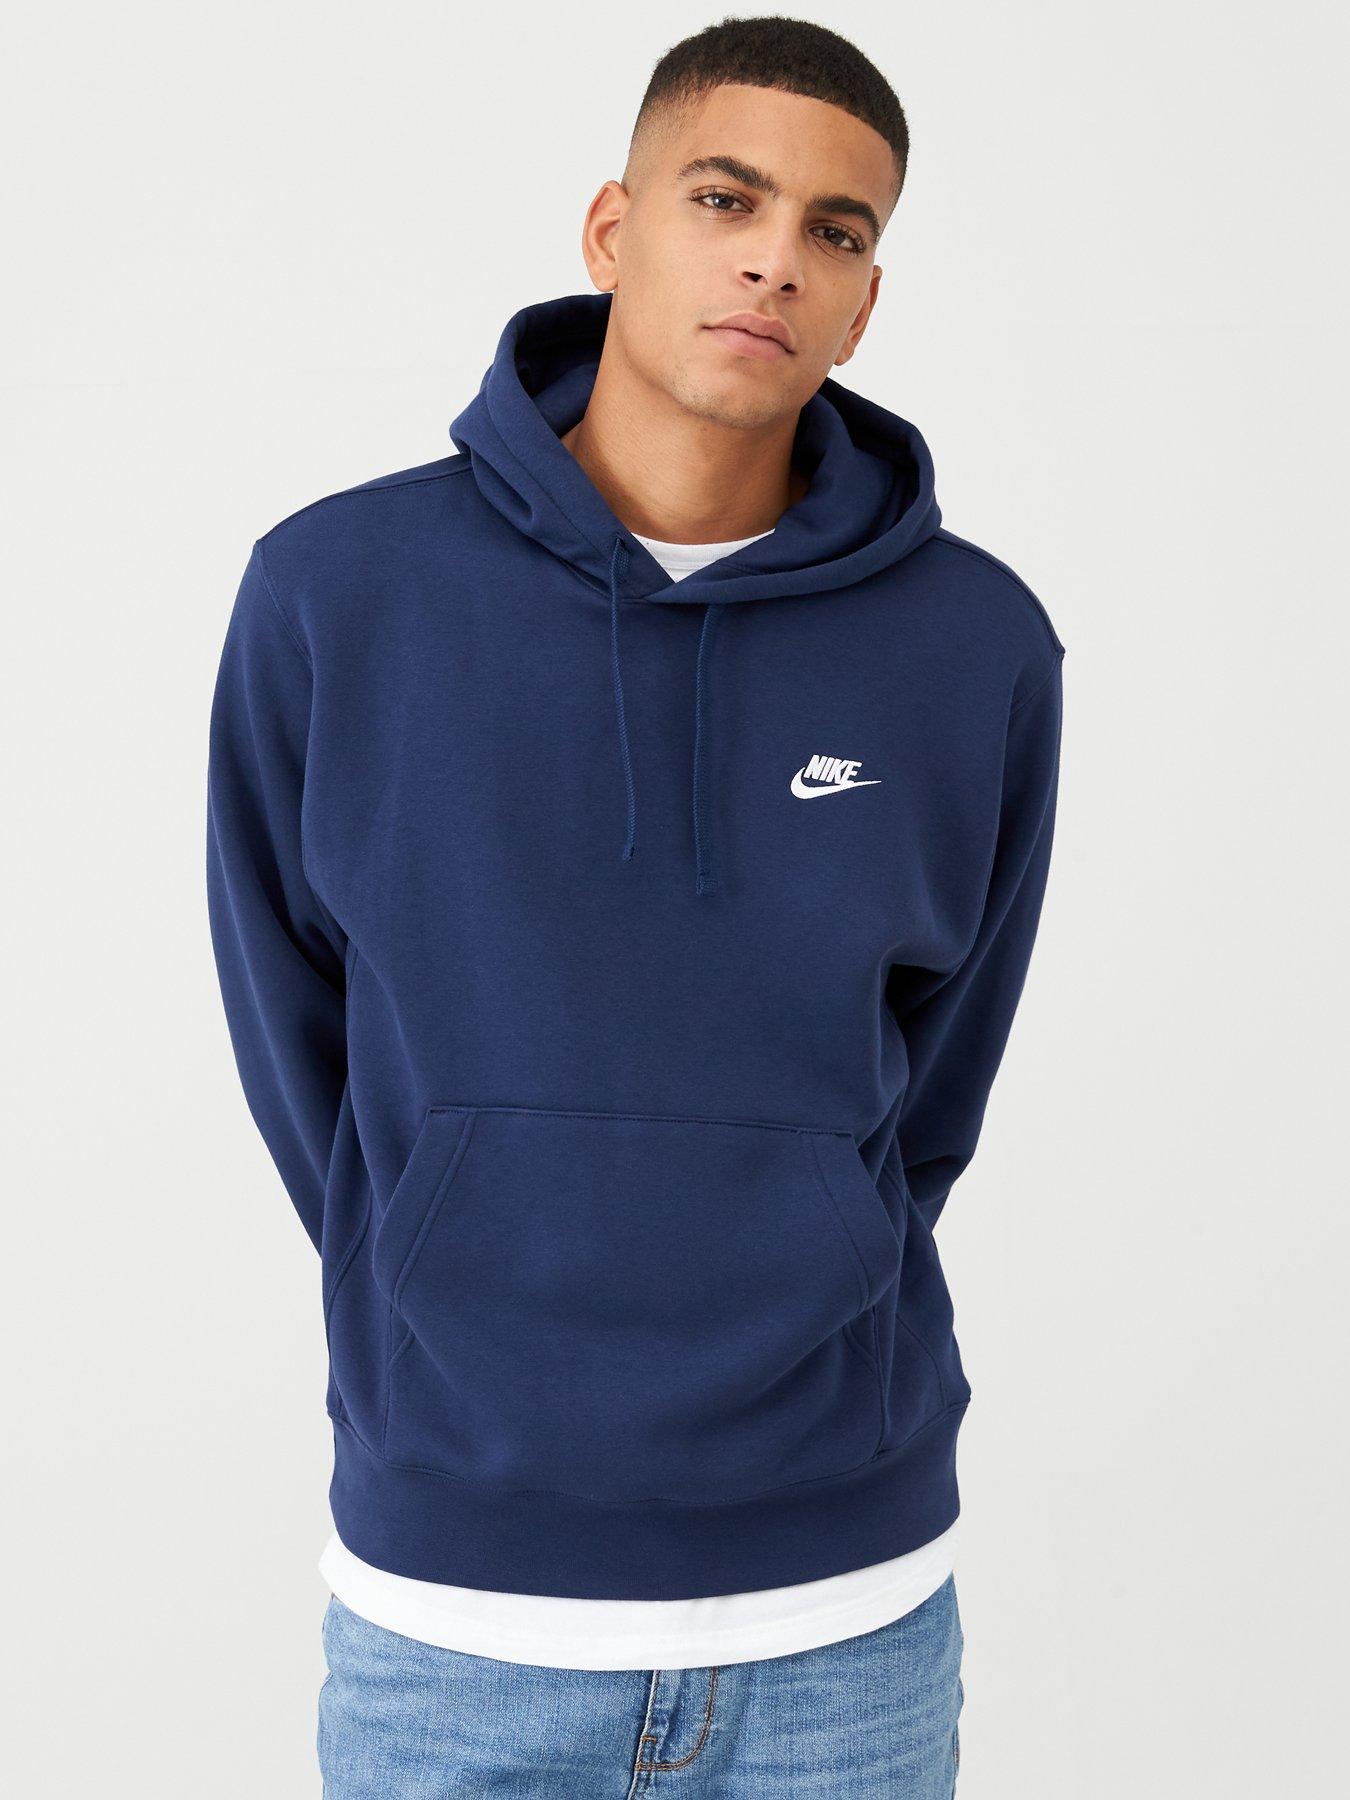 nike navy blue hoodie mens